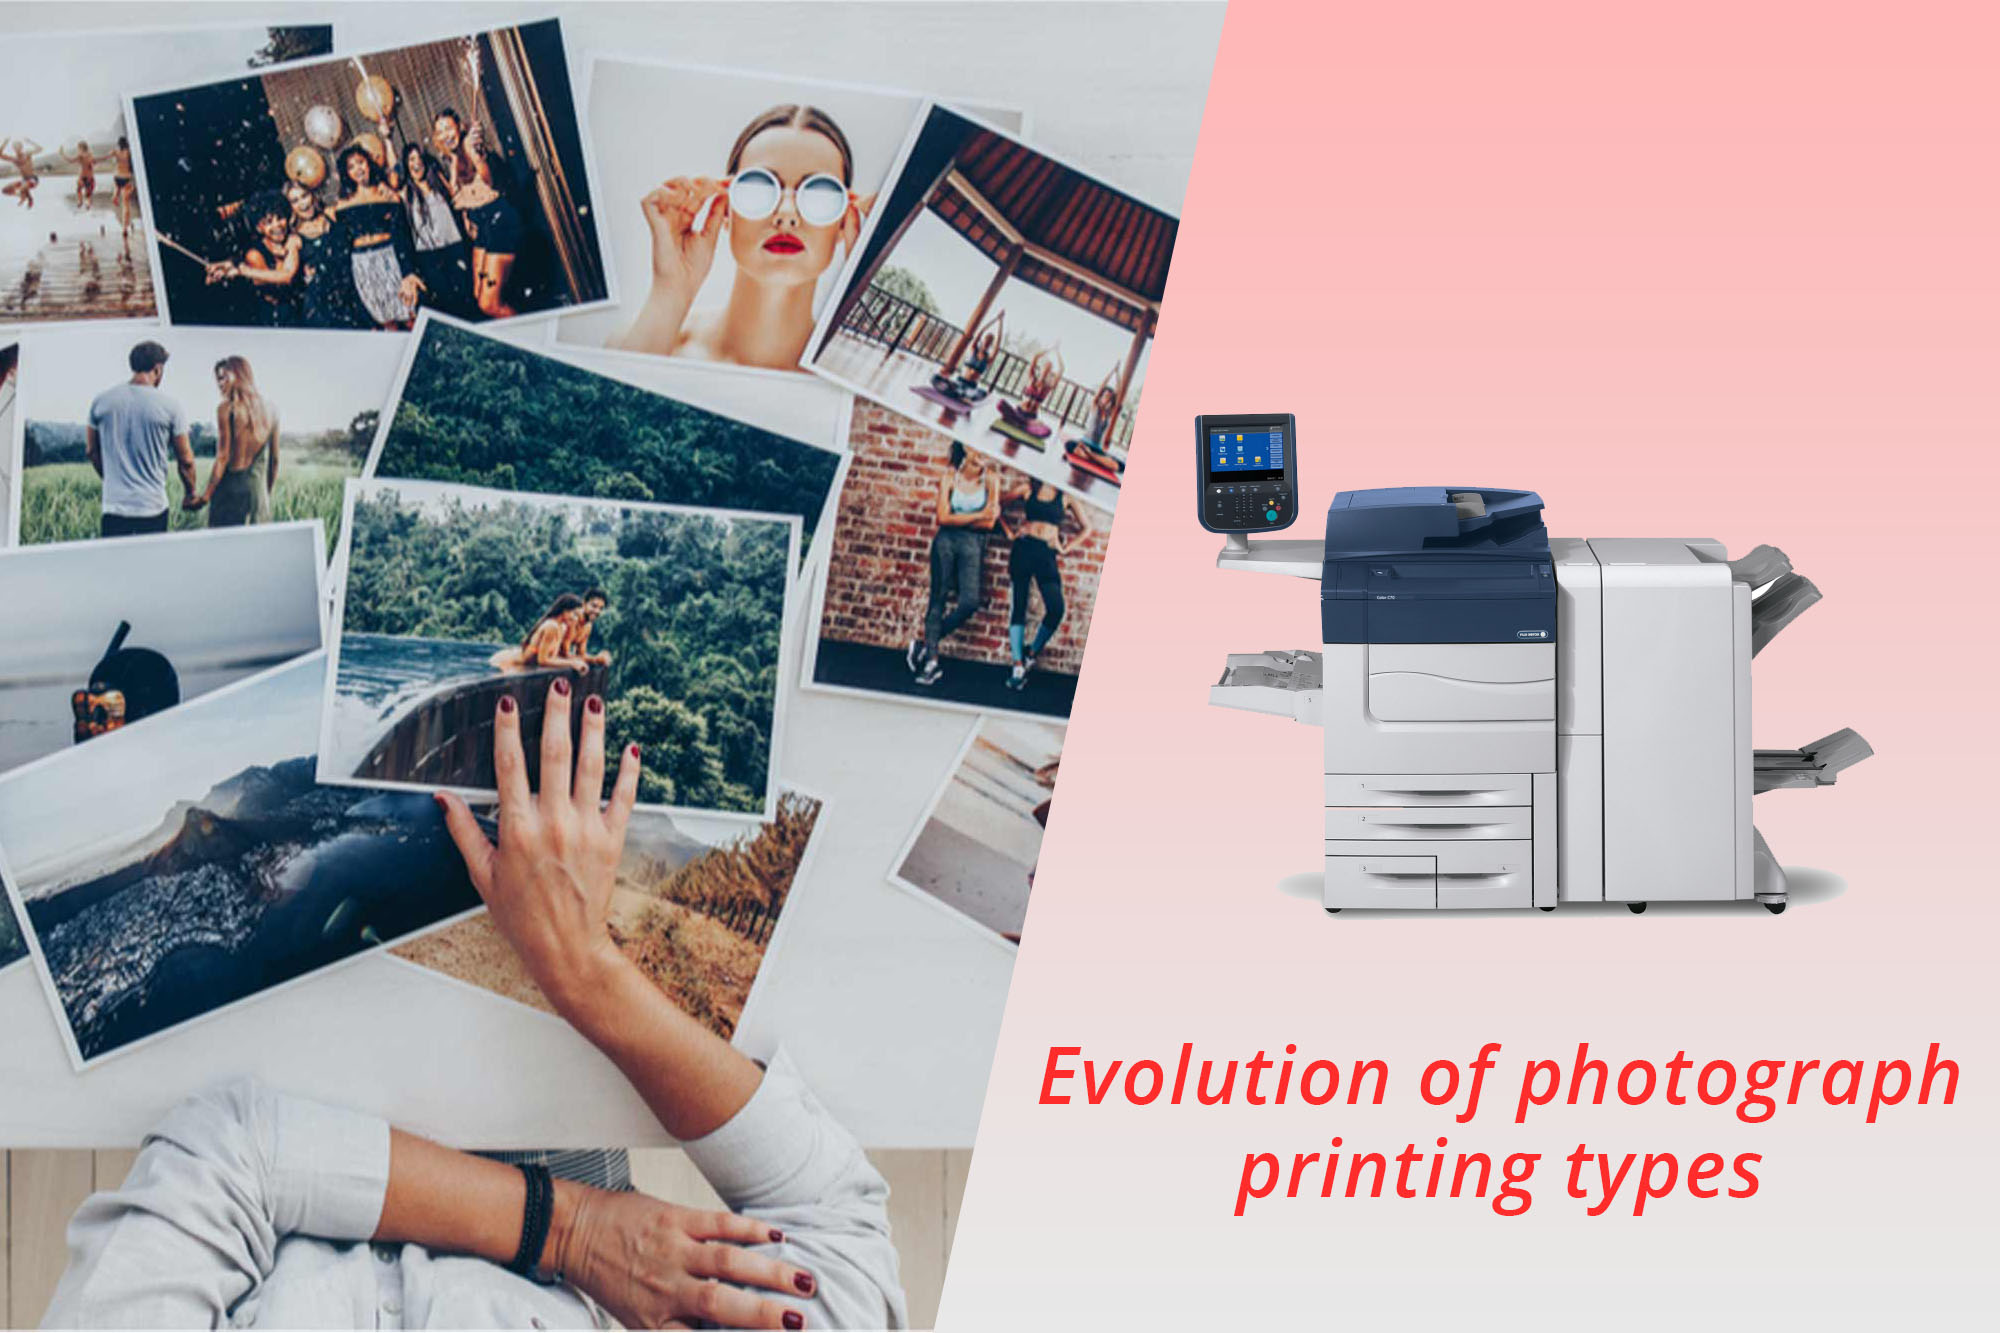 photograph printing